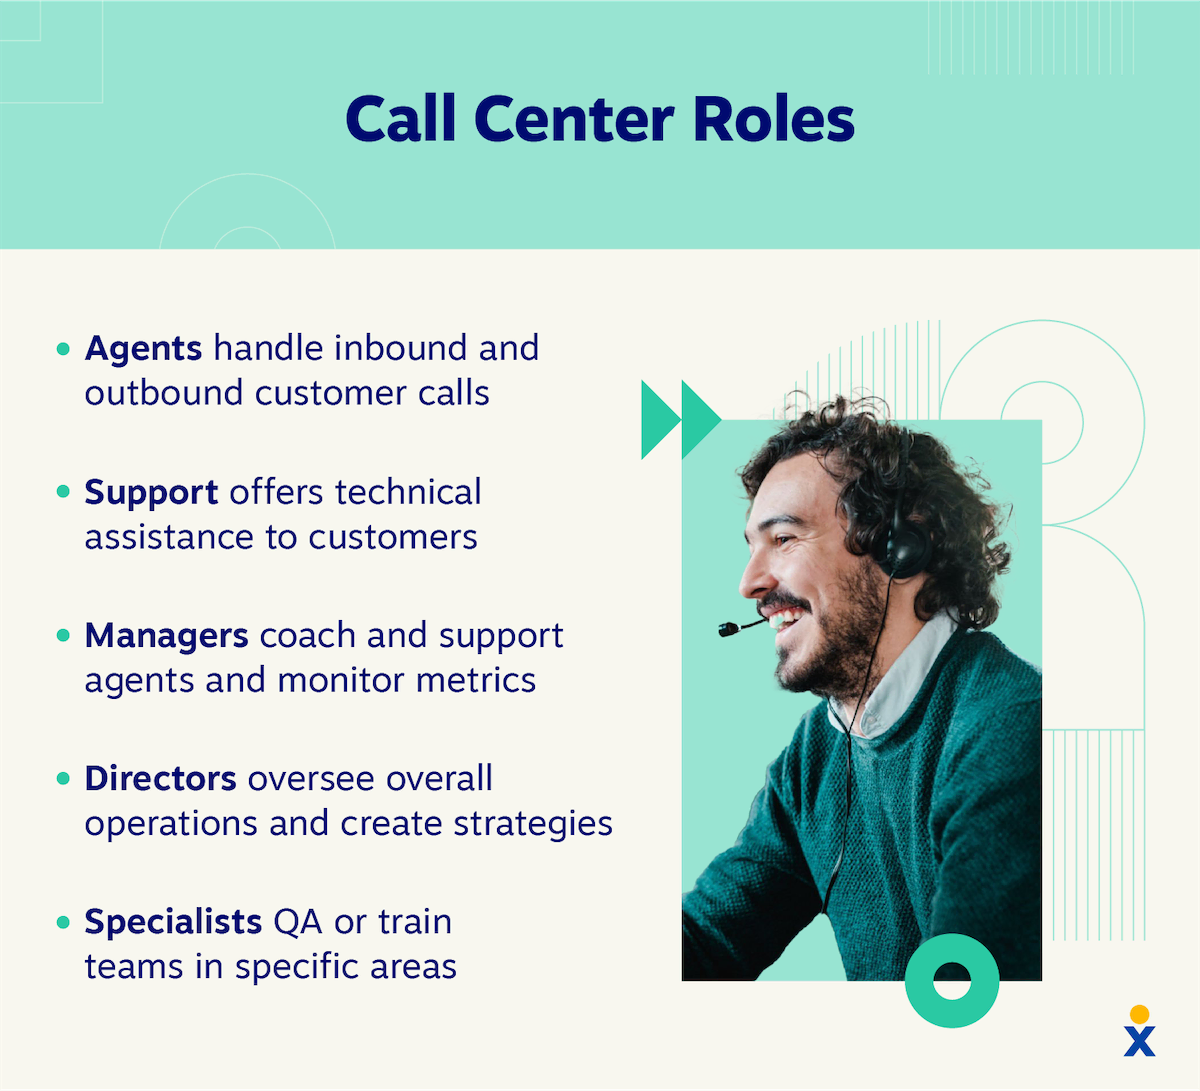 呼叫中心有五种角色，包括代理、支持、经理、总监和专家。